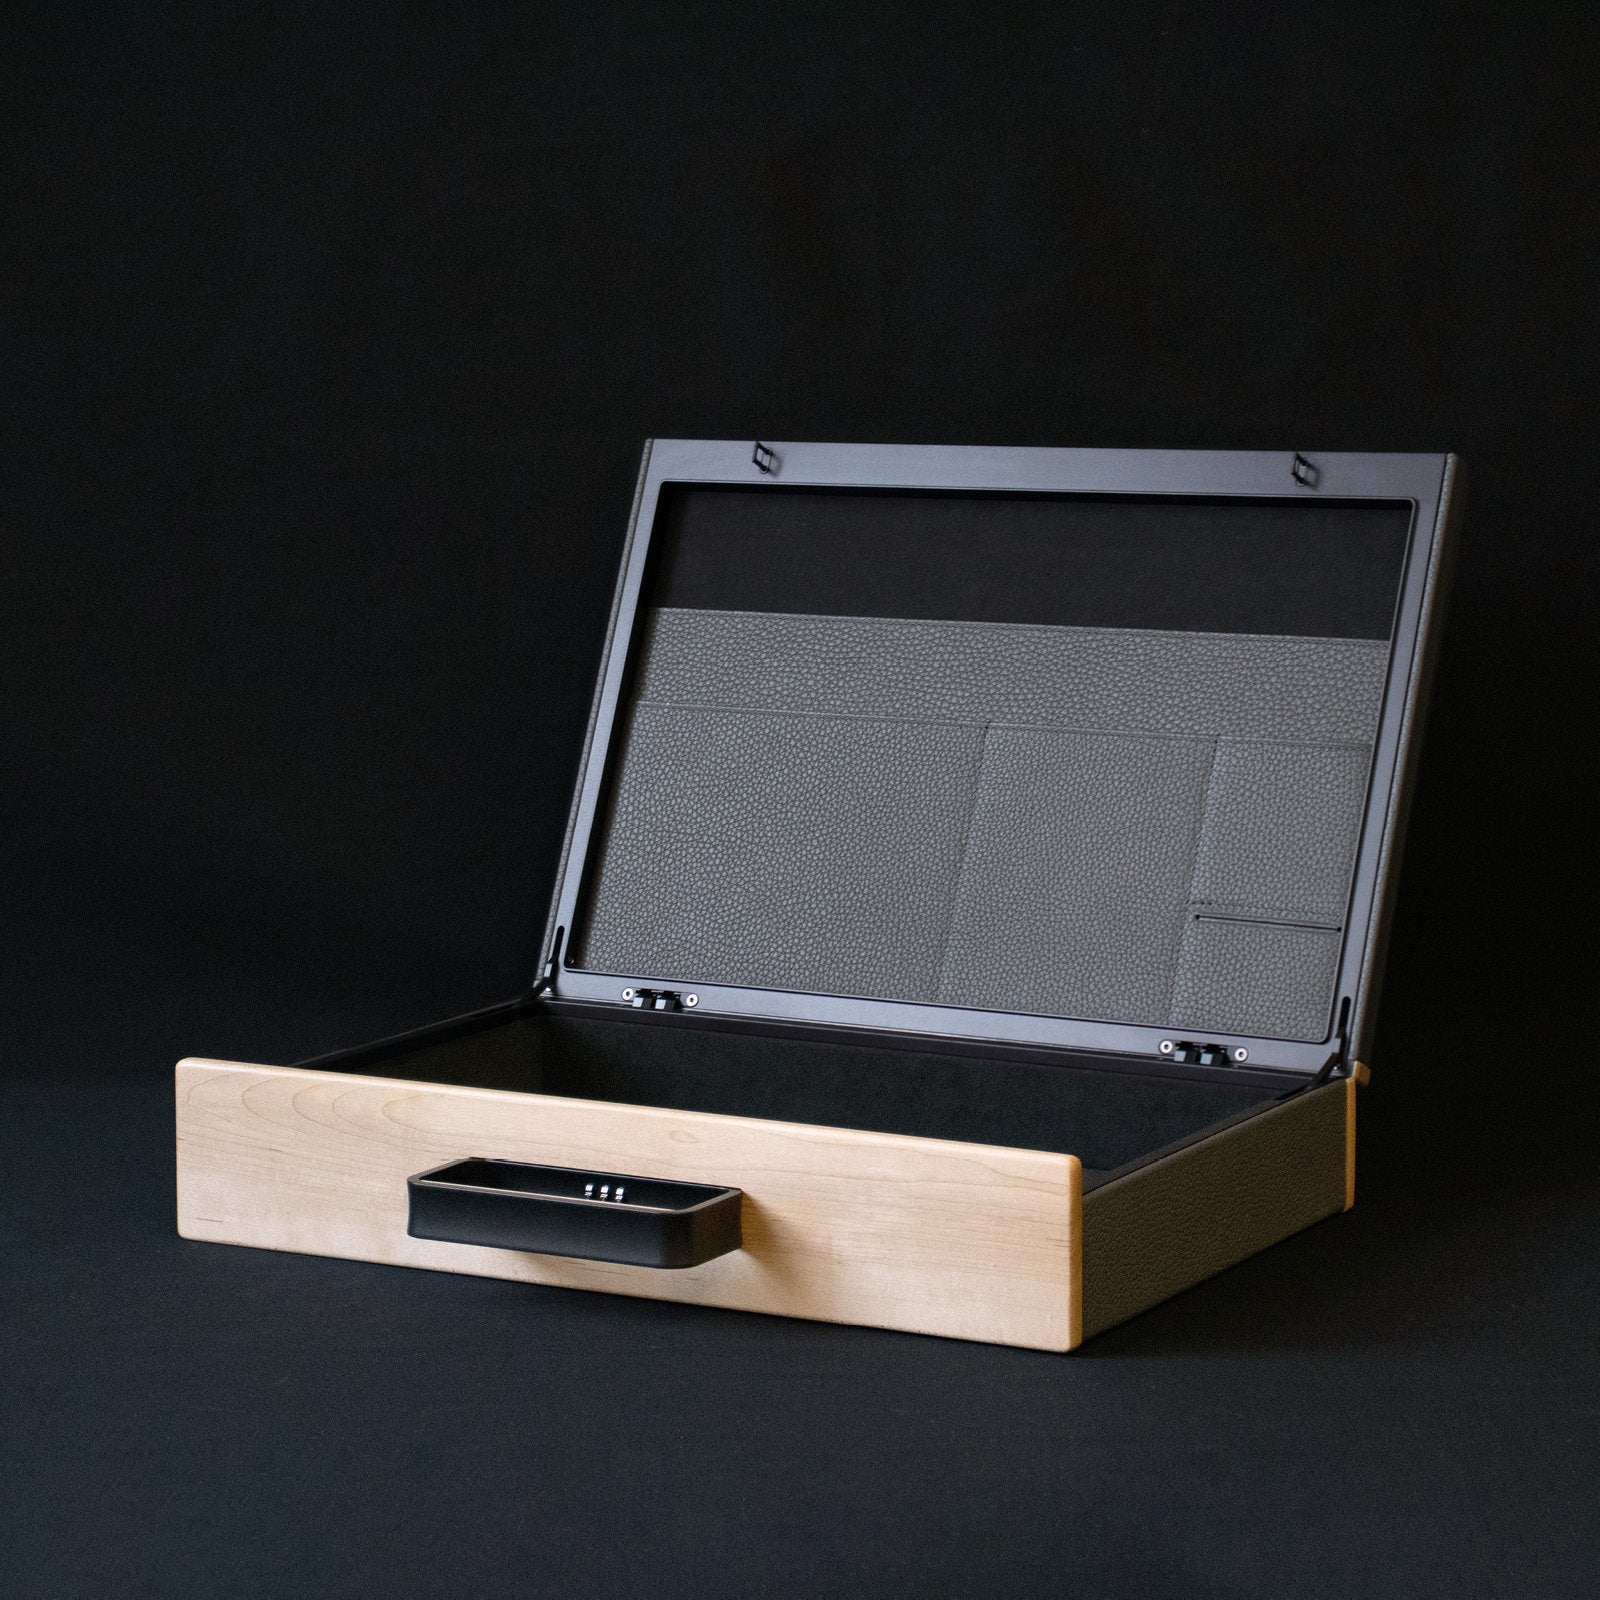 Charles-Simon_bespoke_Mackenzie_Original_black_aliuminum_1, watch briefcase handmade in canada